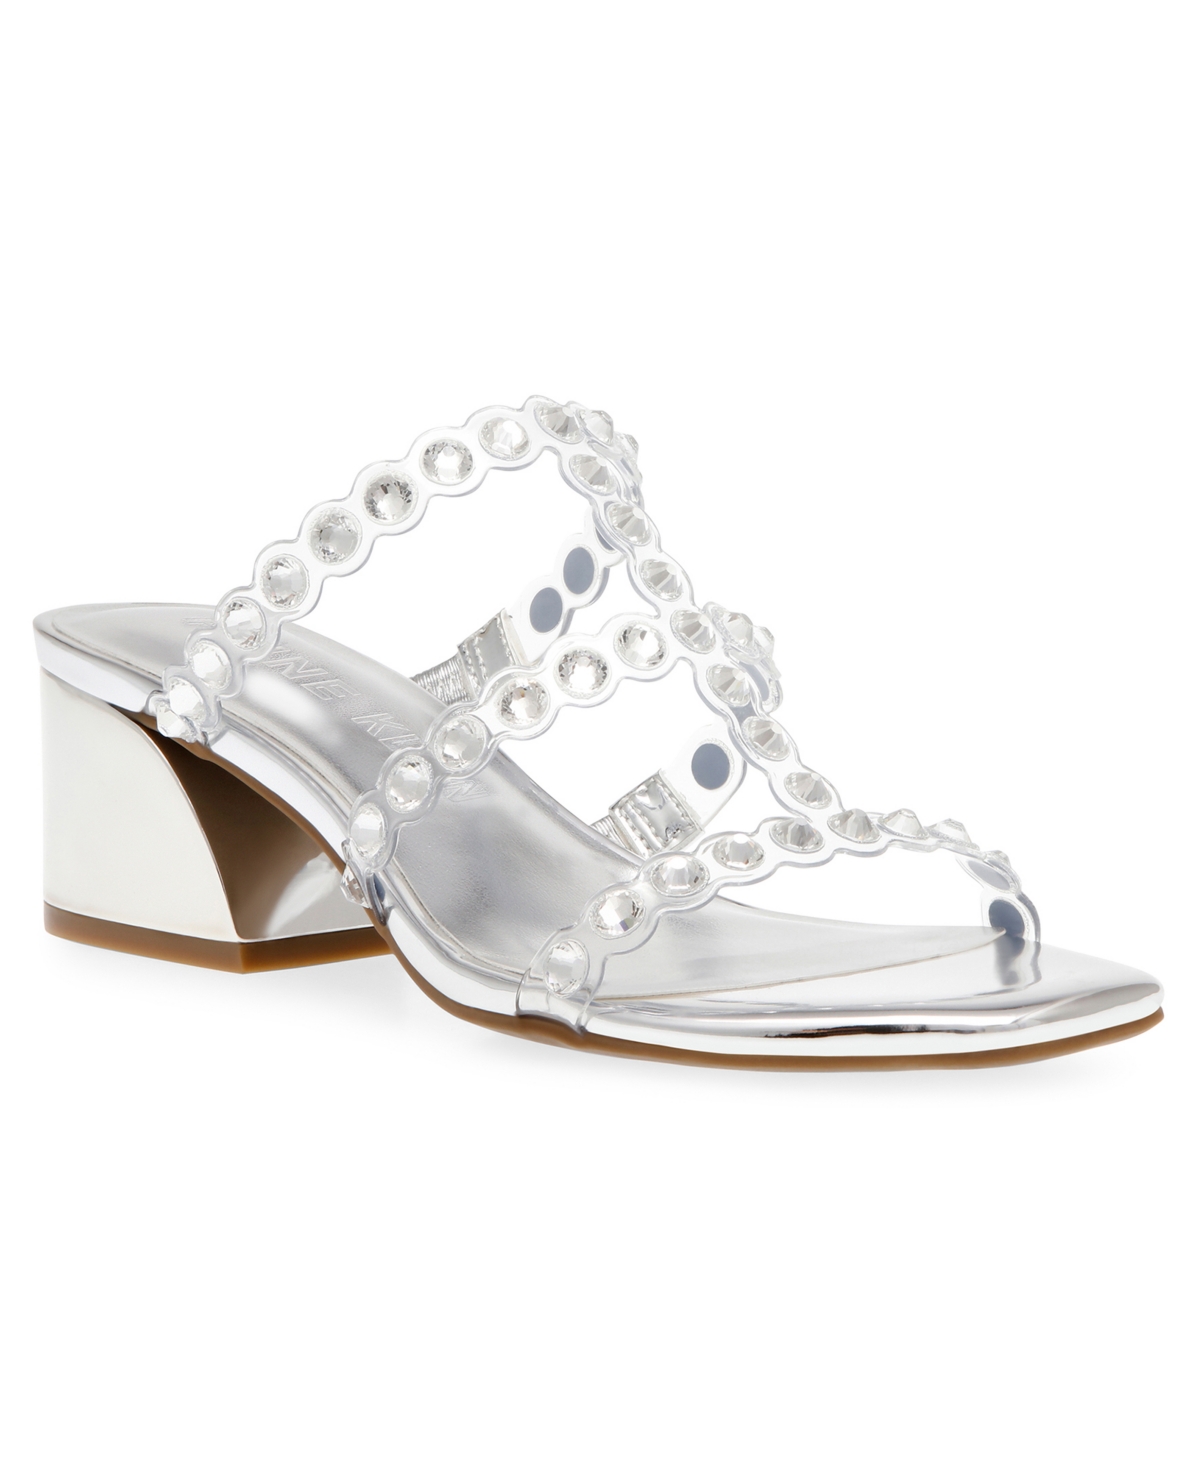 Women's Malti Block Heel Sandals - Clear Crystal, Silver